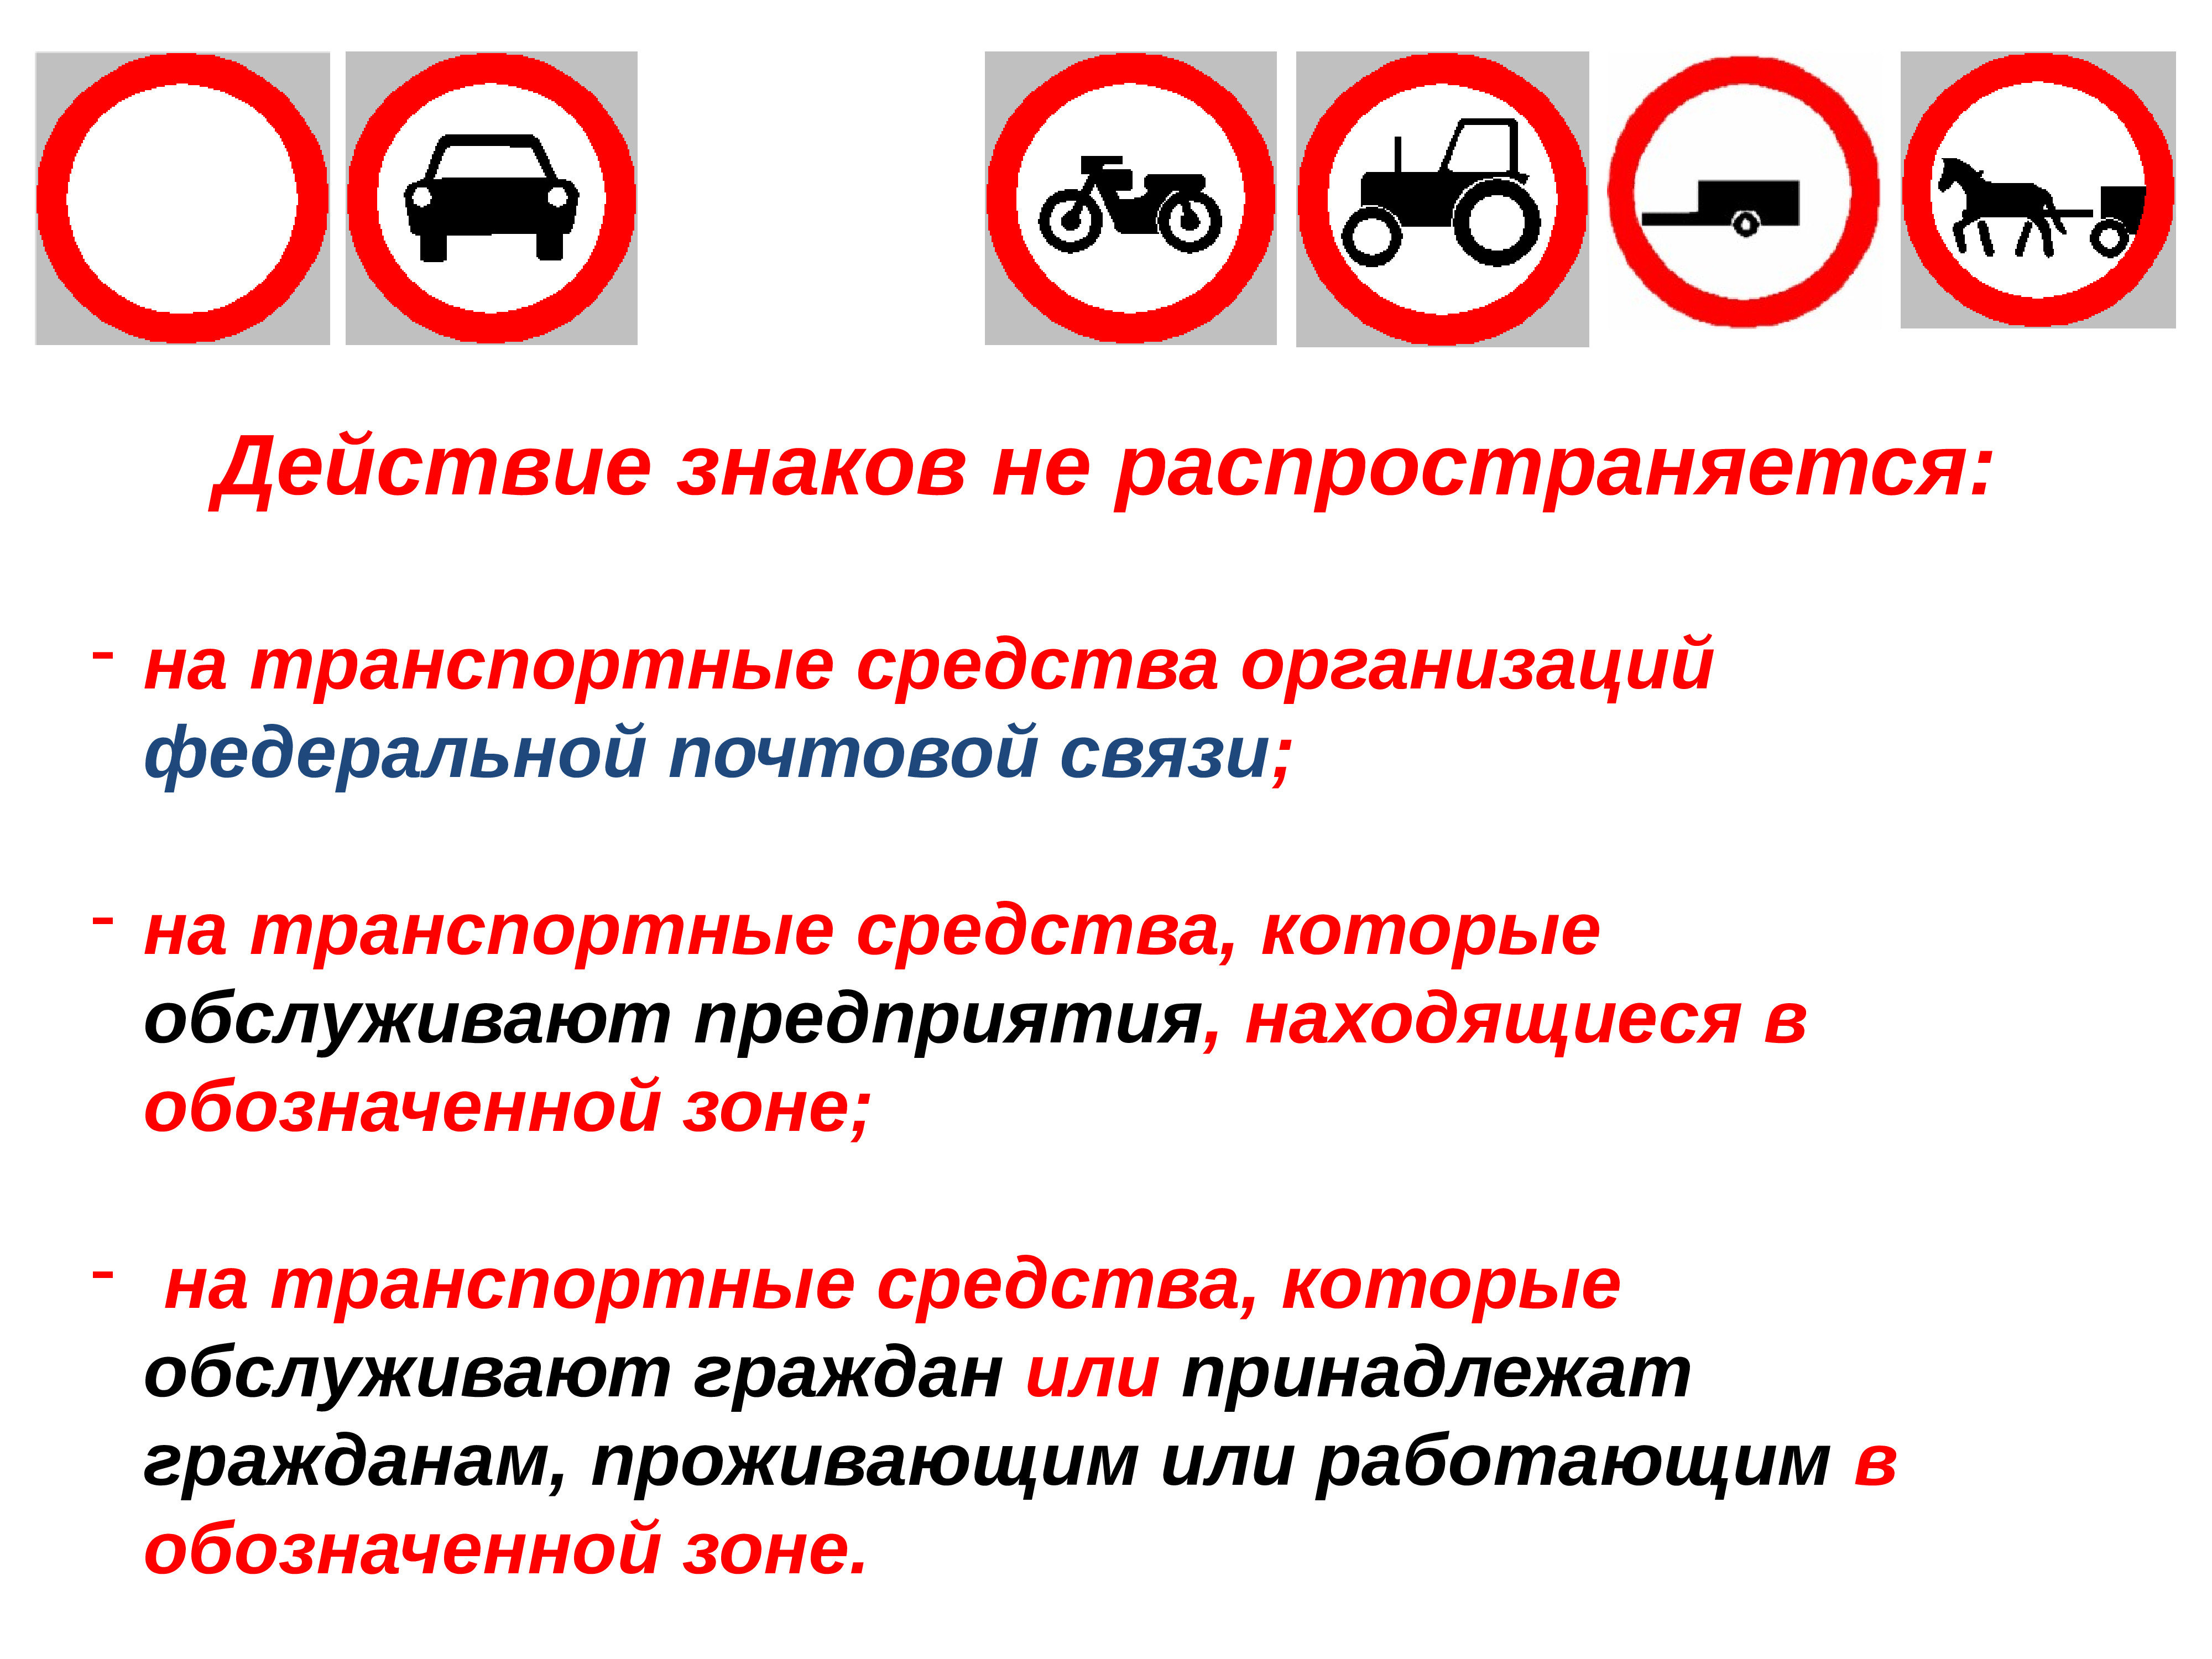 Какие знаки дорожного движения запрещают движение. Запрещающие знаки ПДД И исключения. Запрещаю щи дорожные знаки. Исключения запрещающих дорожных знаков. Действие знаков не распространяется.